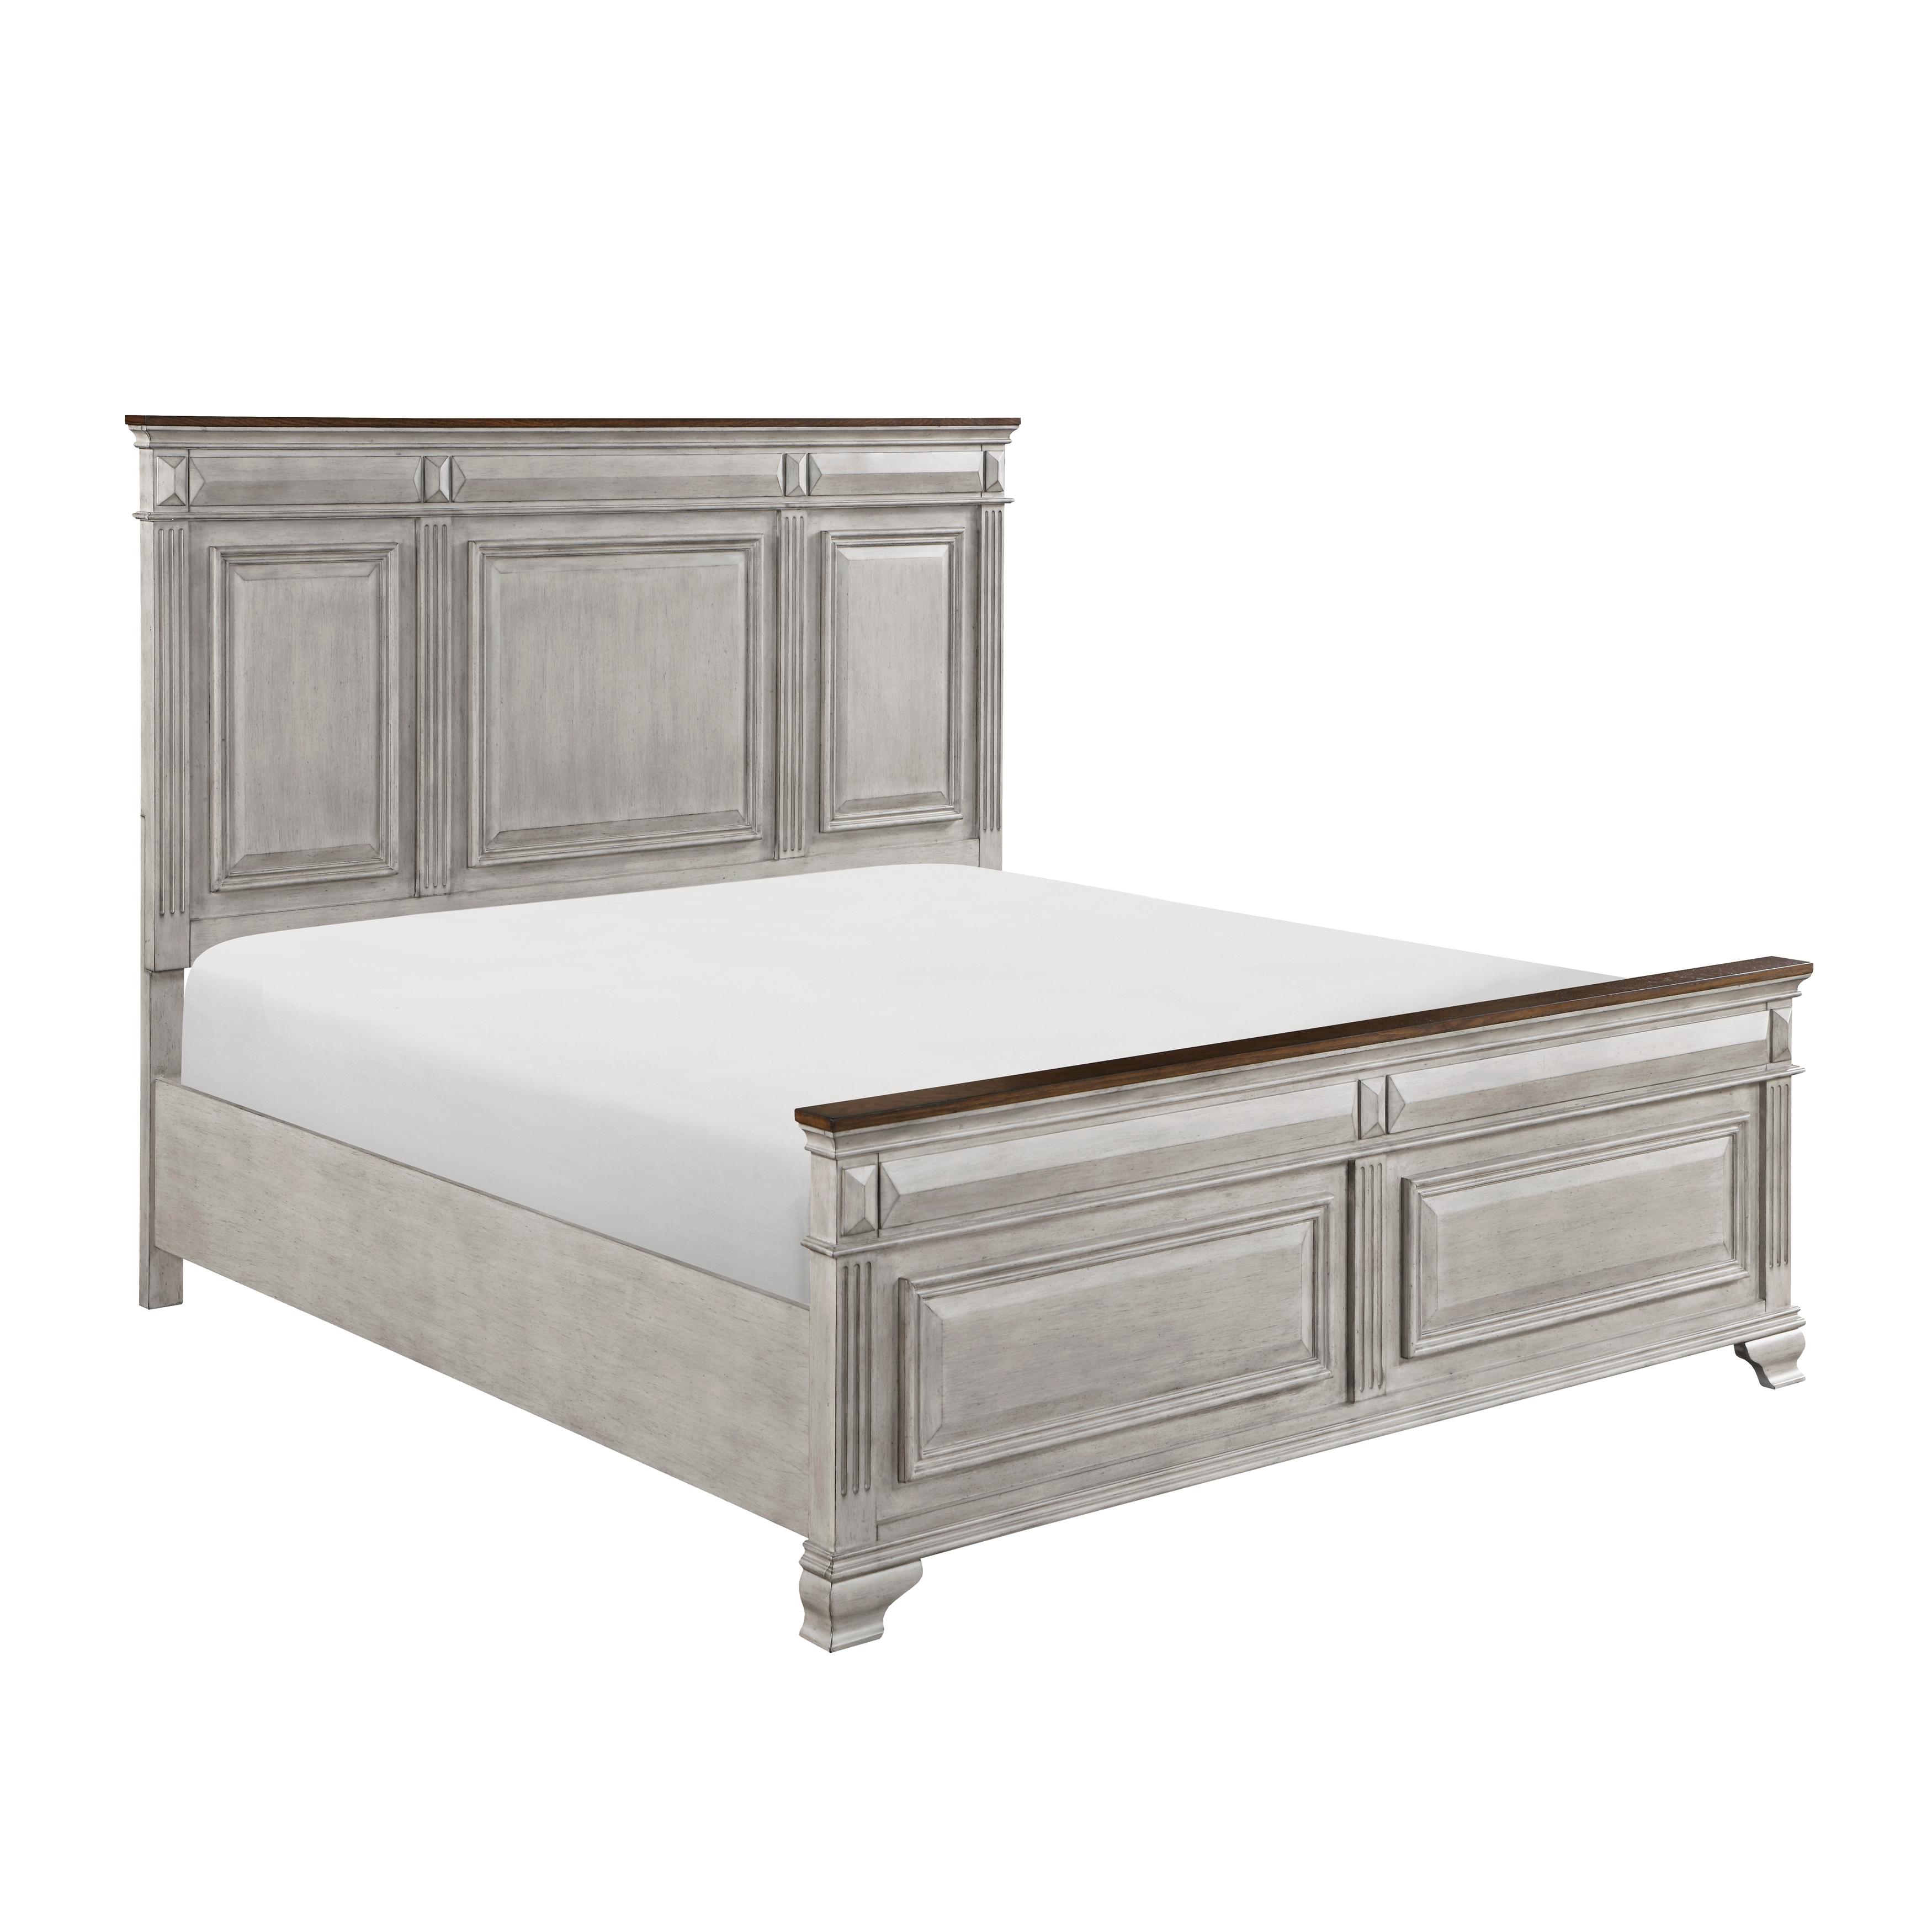 Traditional Panel Bedroom Set Marquette Queen Bed Set 3PCS 1449-1-Q-3PCS 1449-1-Q-3PCS in Gray, Brown 